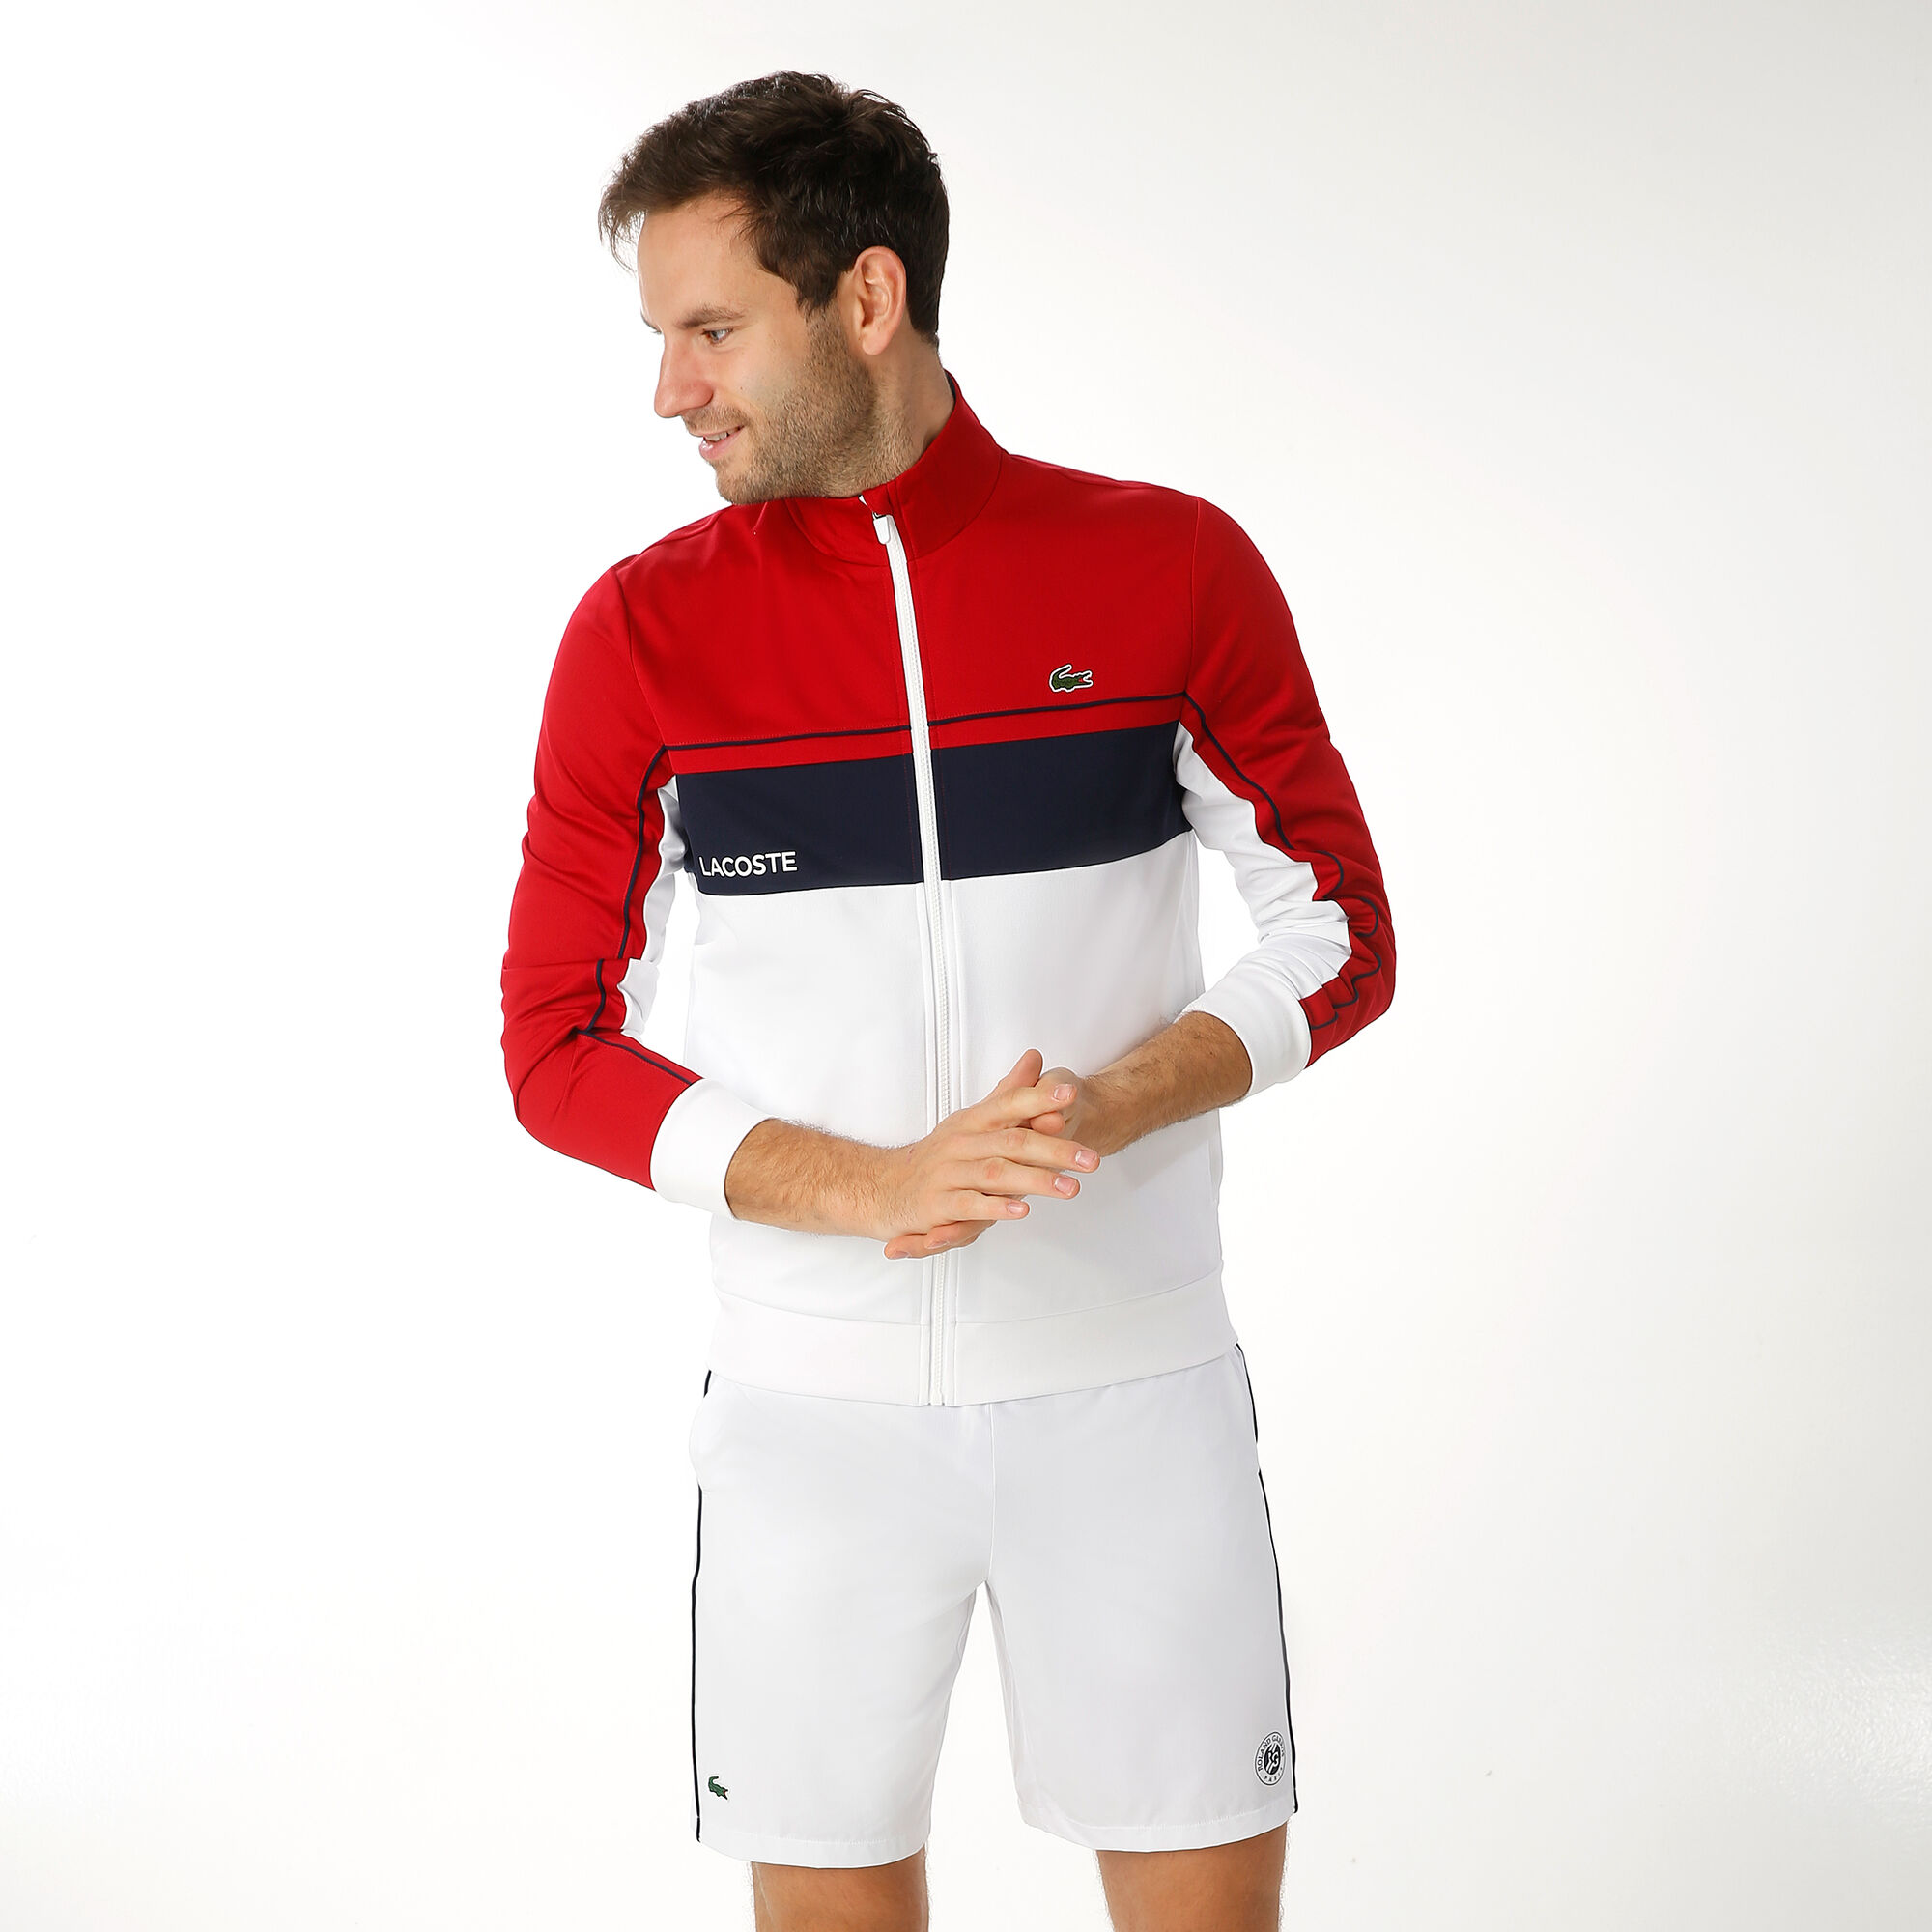 Lacoste Trainingsjacke Herren Weiß, Rot kaufen | DE online Point Tennis